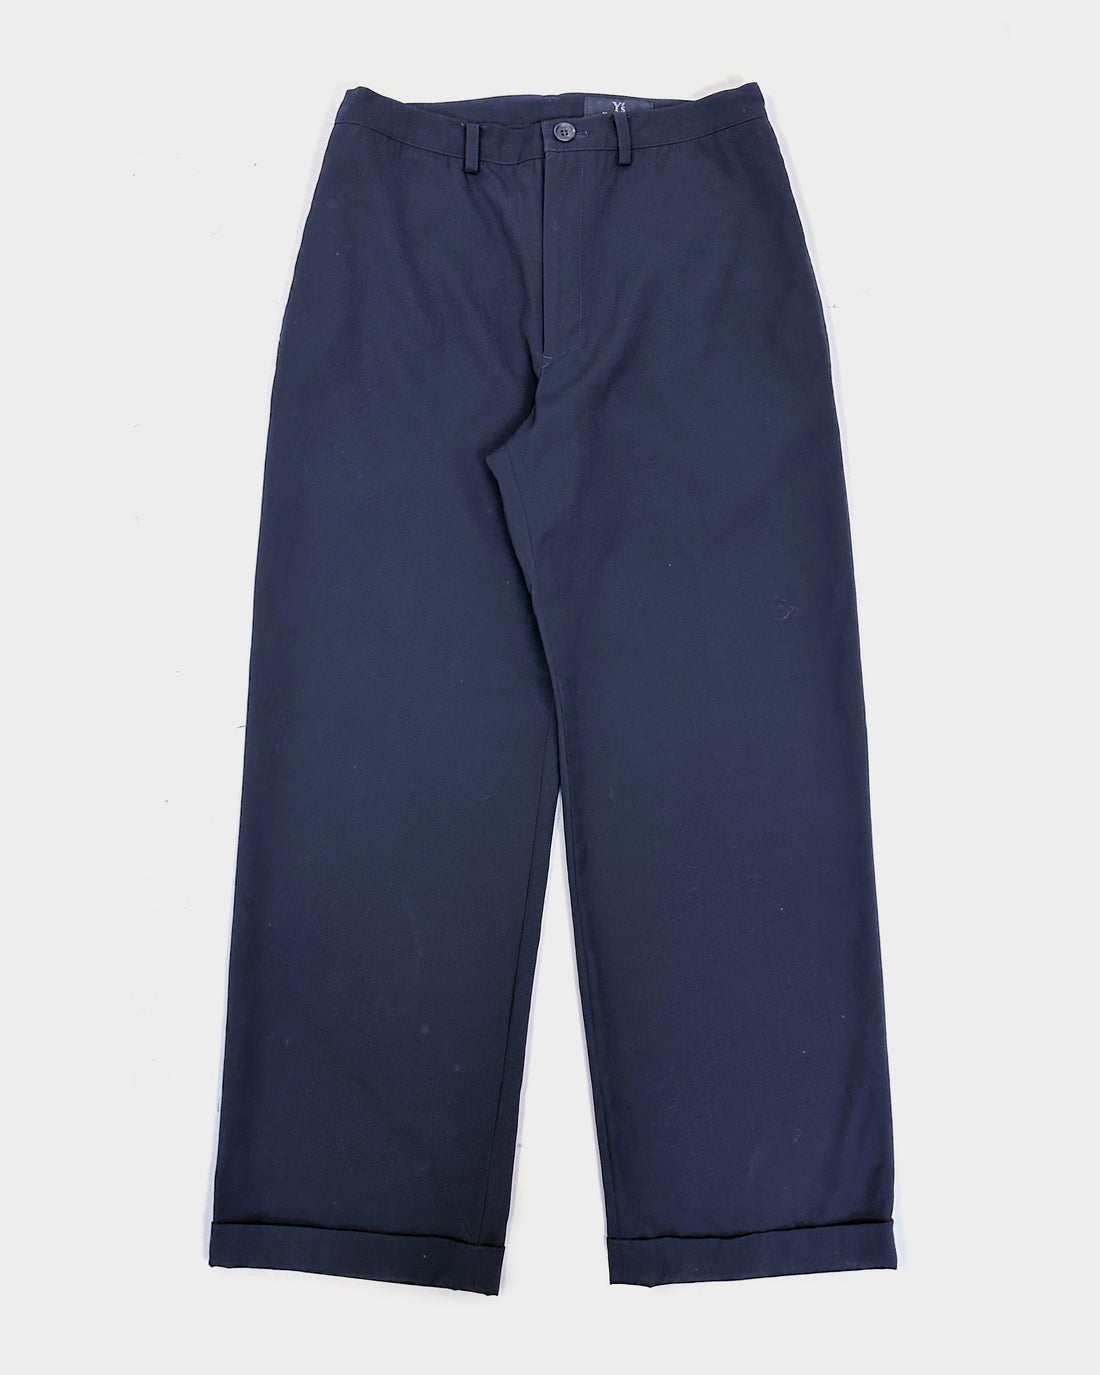 Yohji Yamamoto Wool Thin Navy Blue Pants 2008